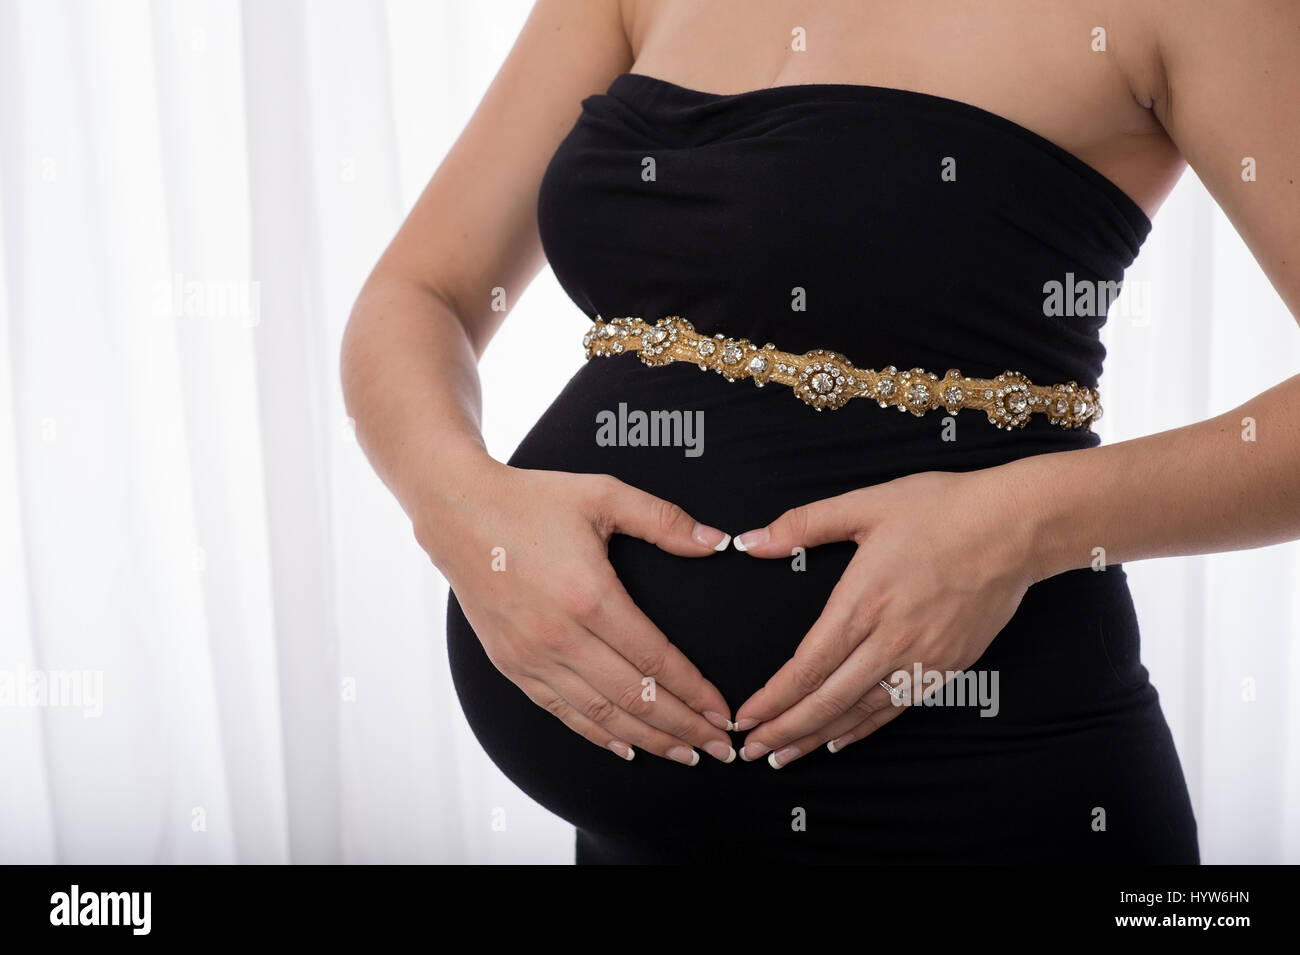 Eine Frauenhand in der Form eines Herzens über ihren schwangeren Bauch  statt. Sie trägt ein schwarzes Kleid und eleganten Strass Gürtel  Stockfotografie - Alamy